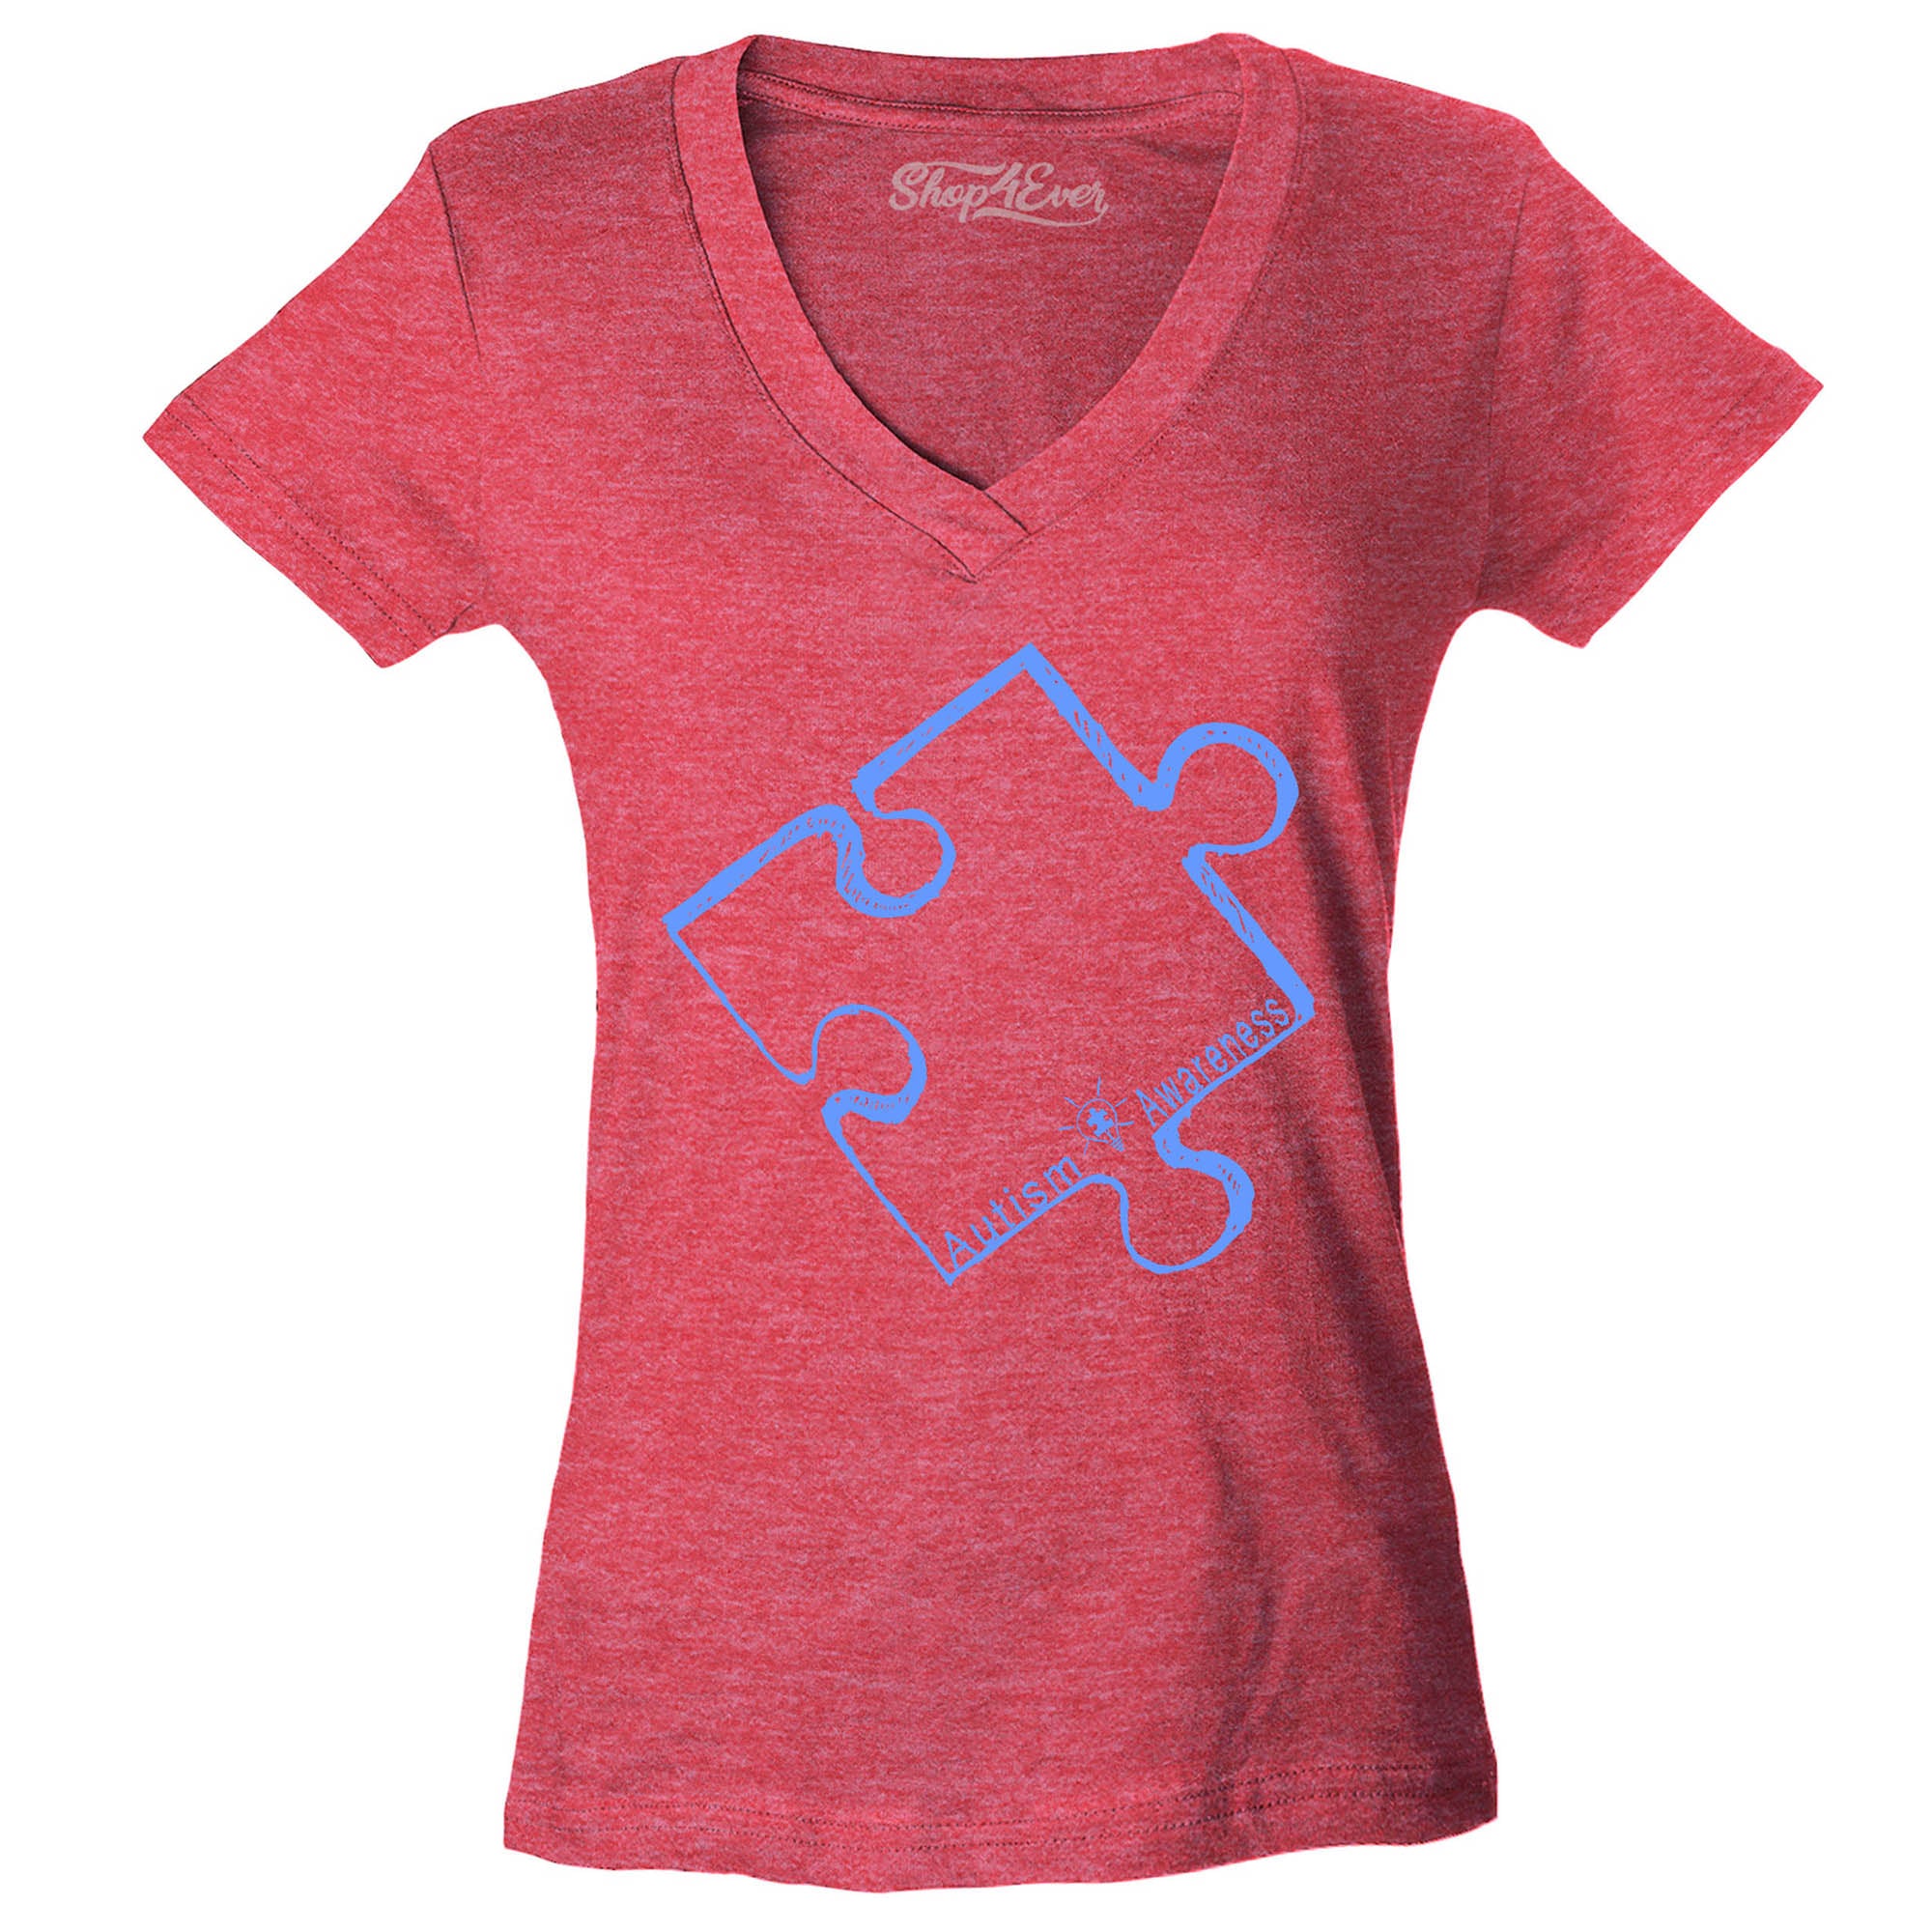 Blue Puzzle Piece Women's V-Neck T-Shirt Autism Support Shirts